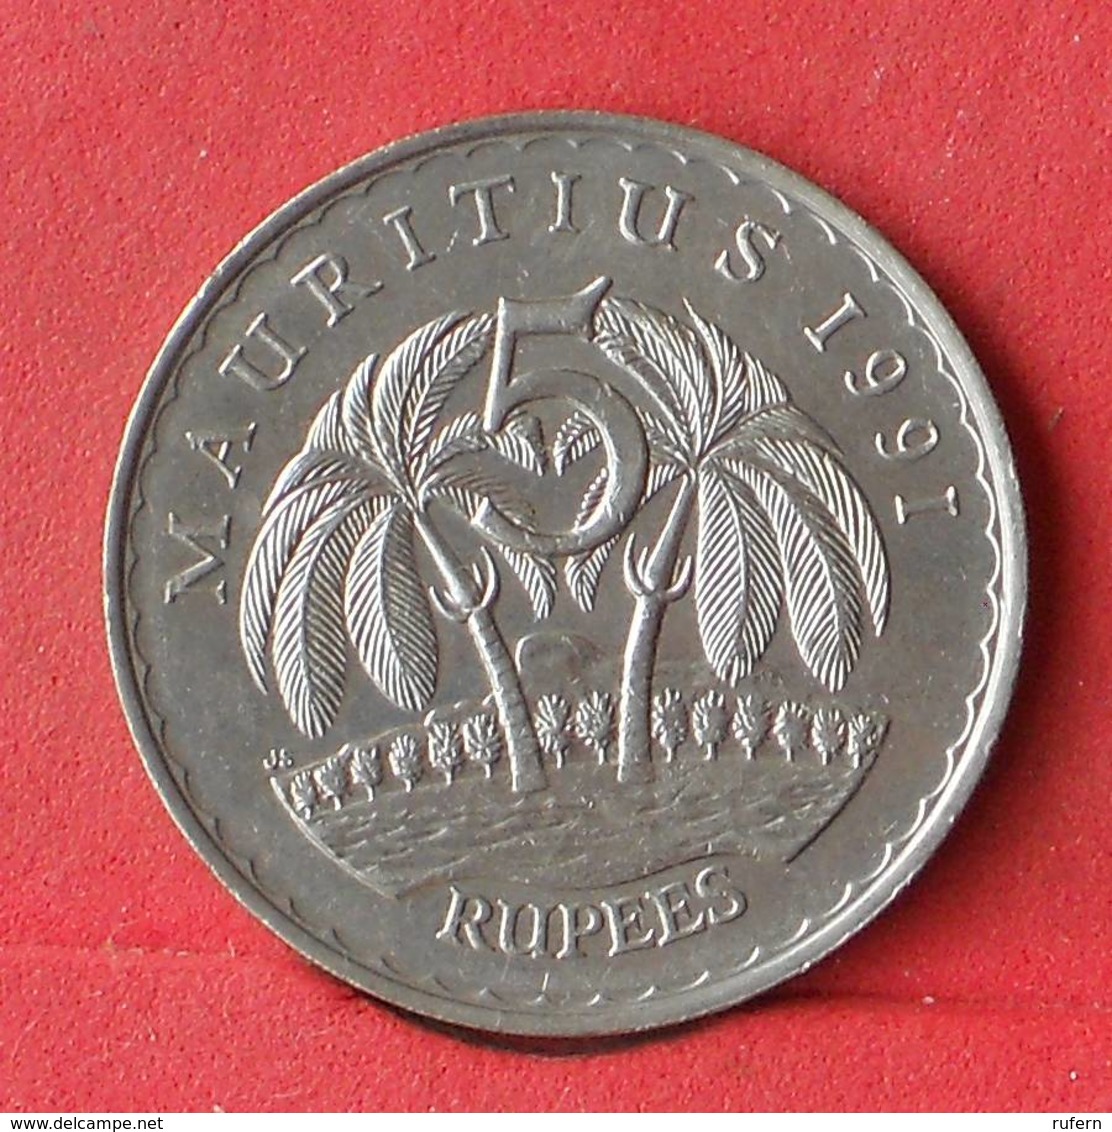 MAURITIUS 5 RUPEES 1991 -    KM# 56 - (Nº28486) - Mauritius